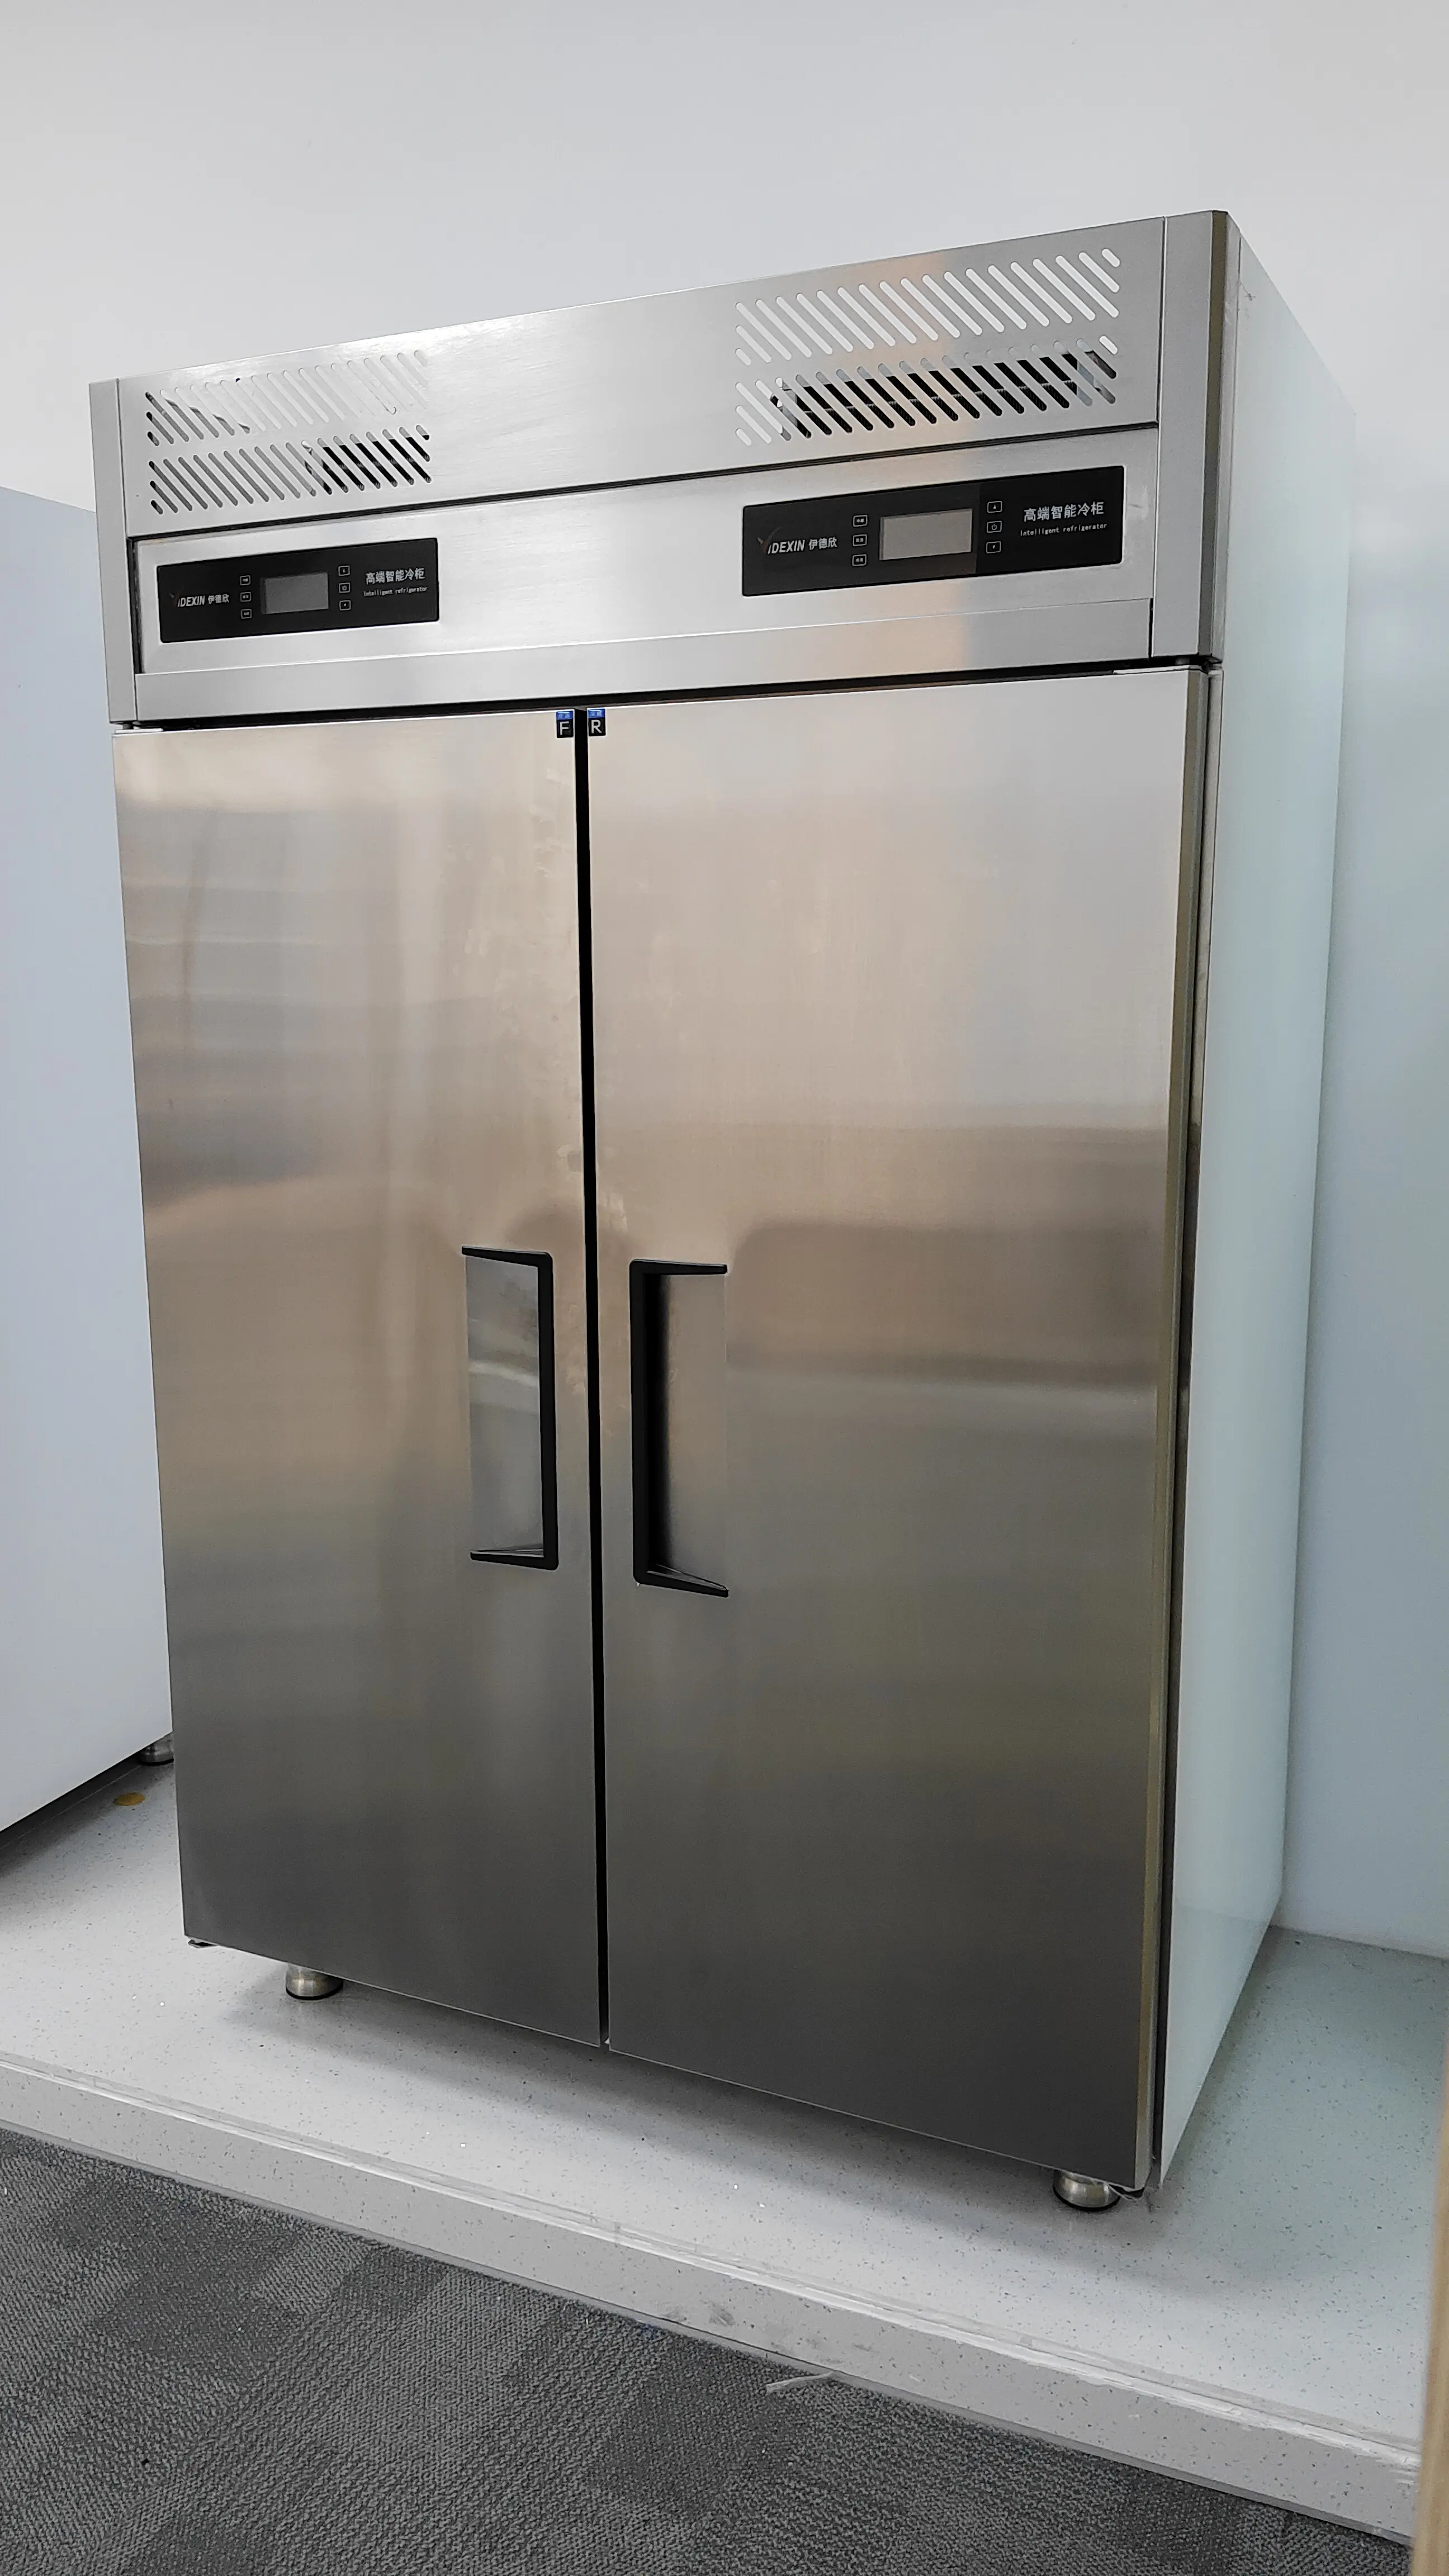 Электронный коммерческий холодильник с 2 дверями, левая и правая нержавеющая сталь, воздушное охлаждение, морозильная камера для мороженого